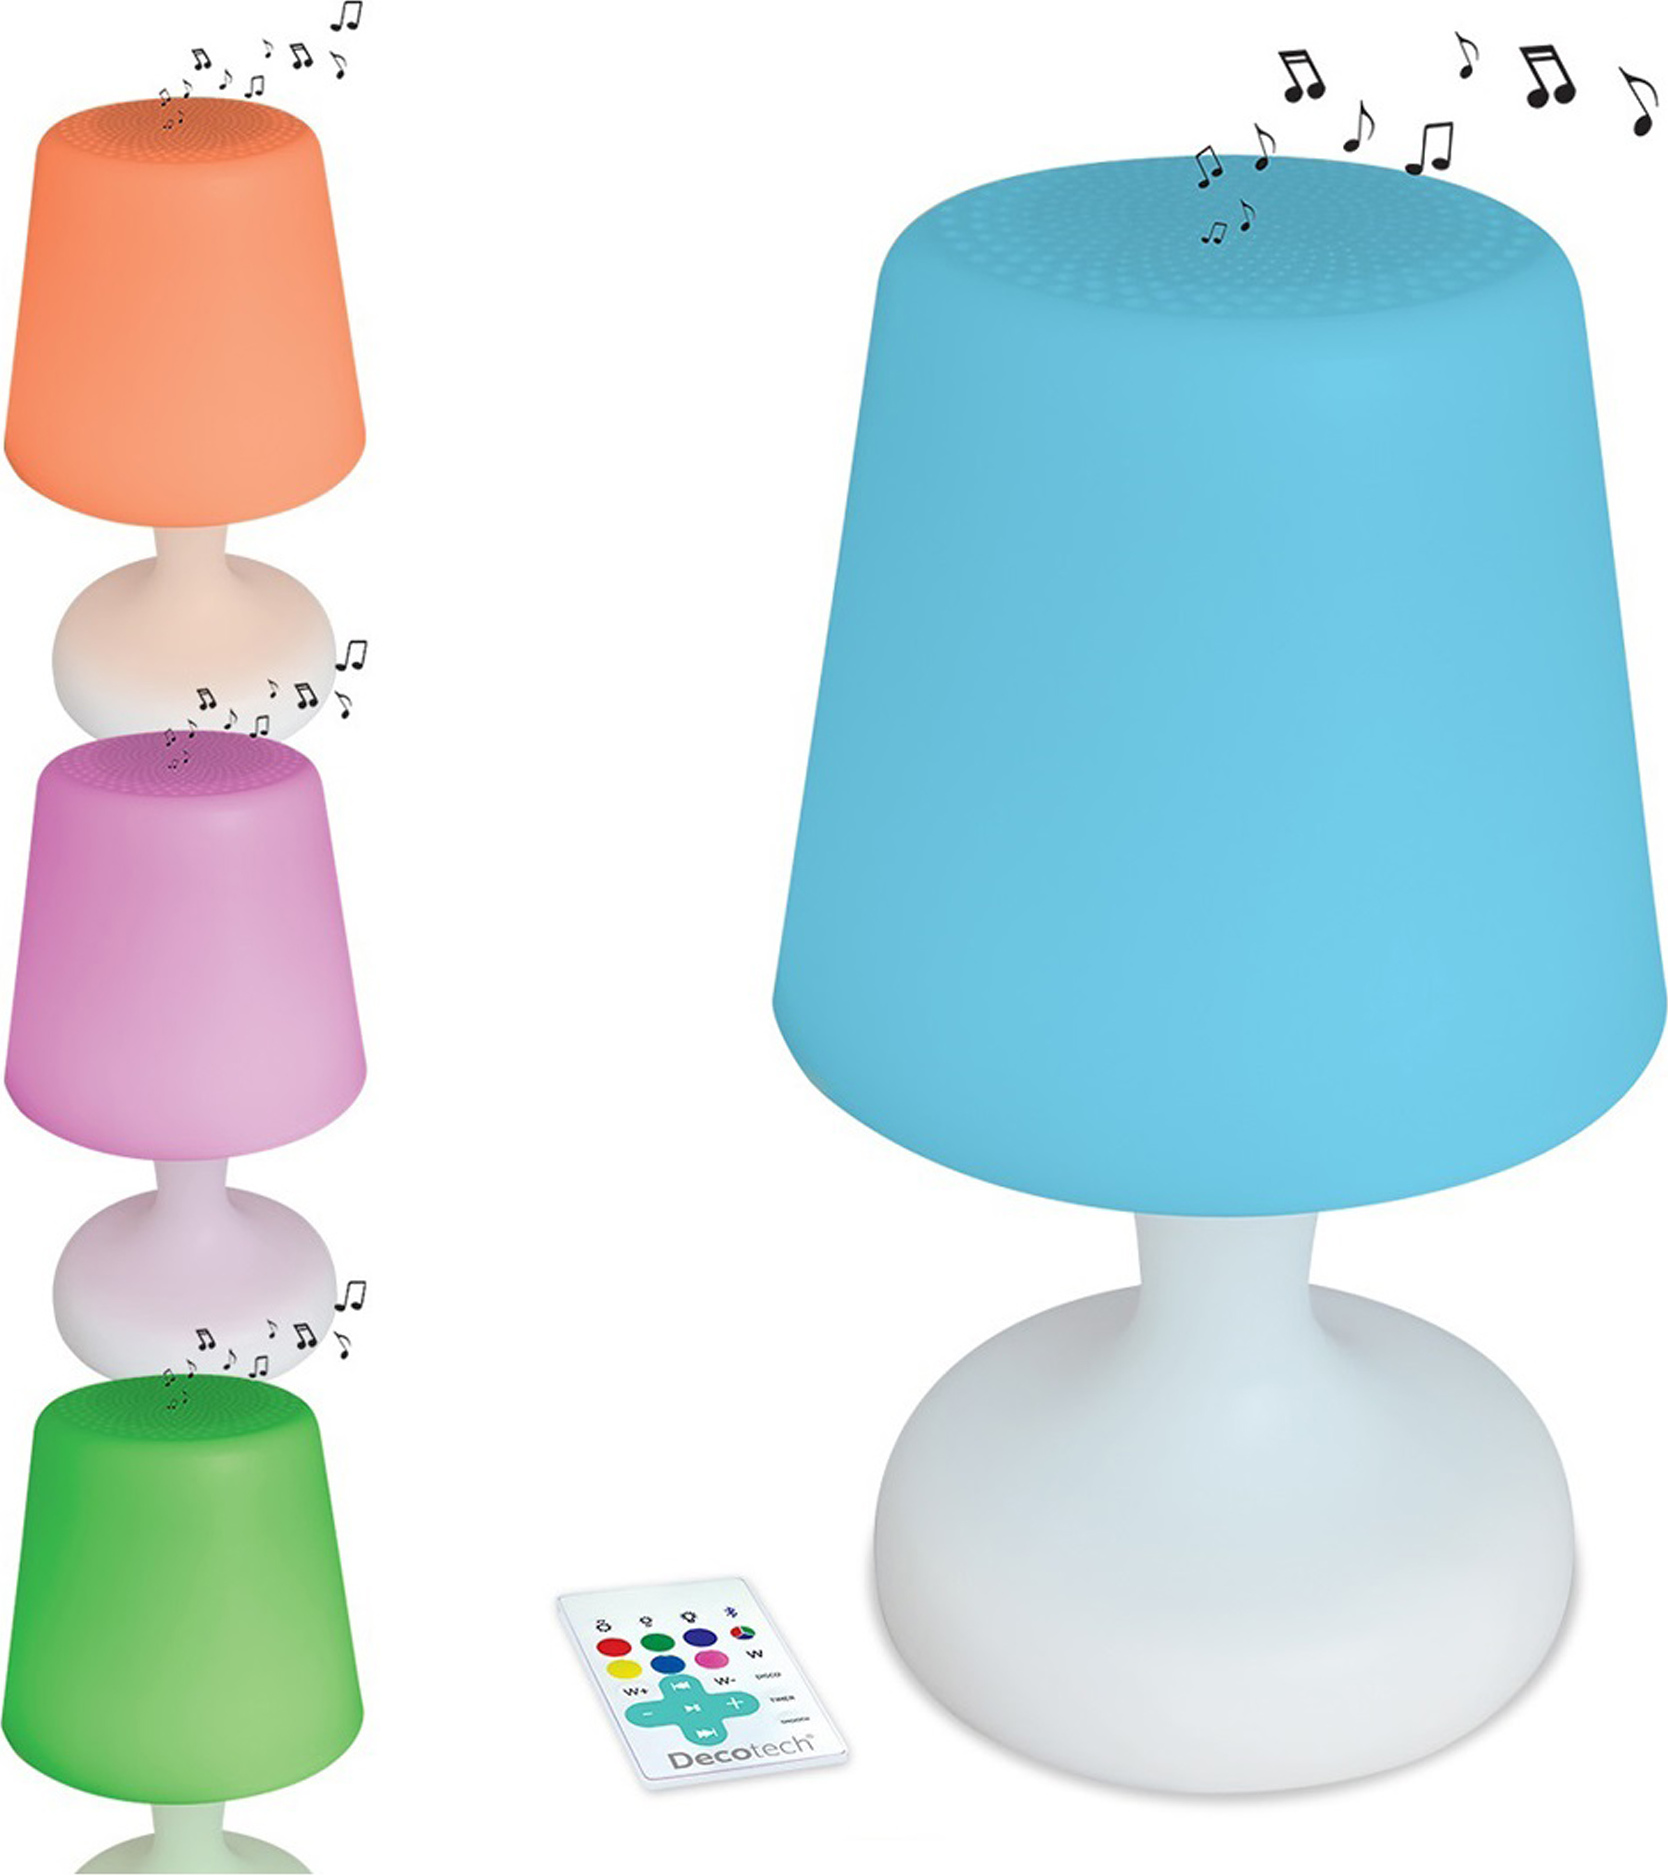 Reproduktor ve tvaru stolní lampy Bluetooth